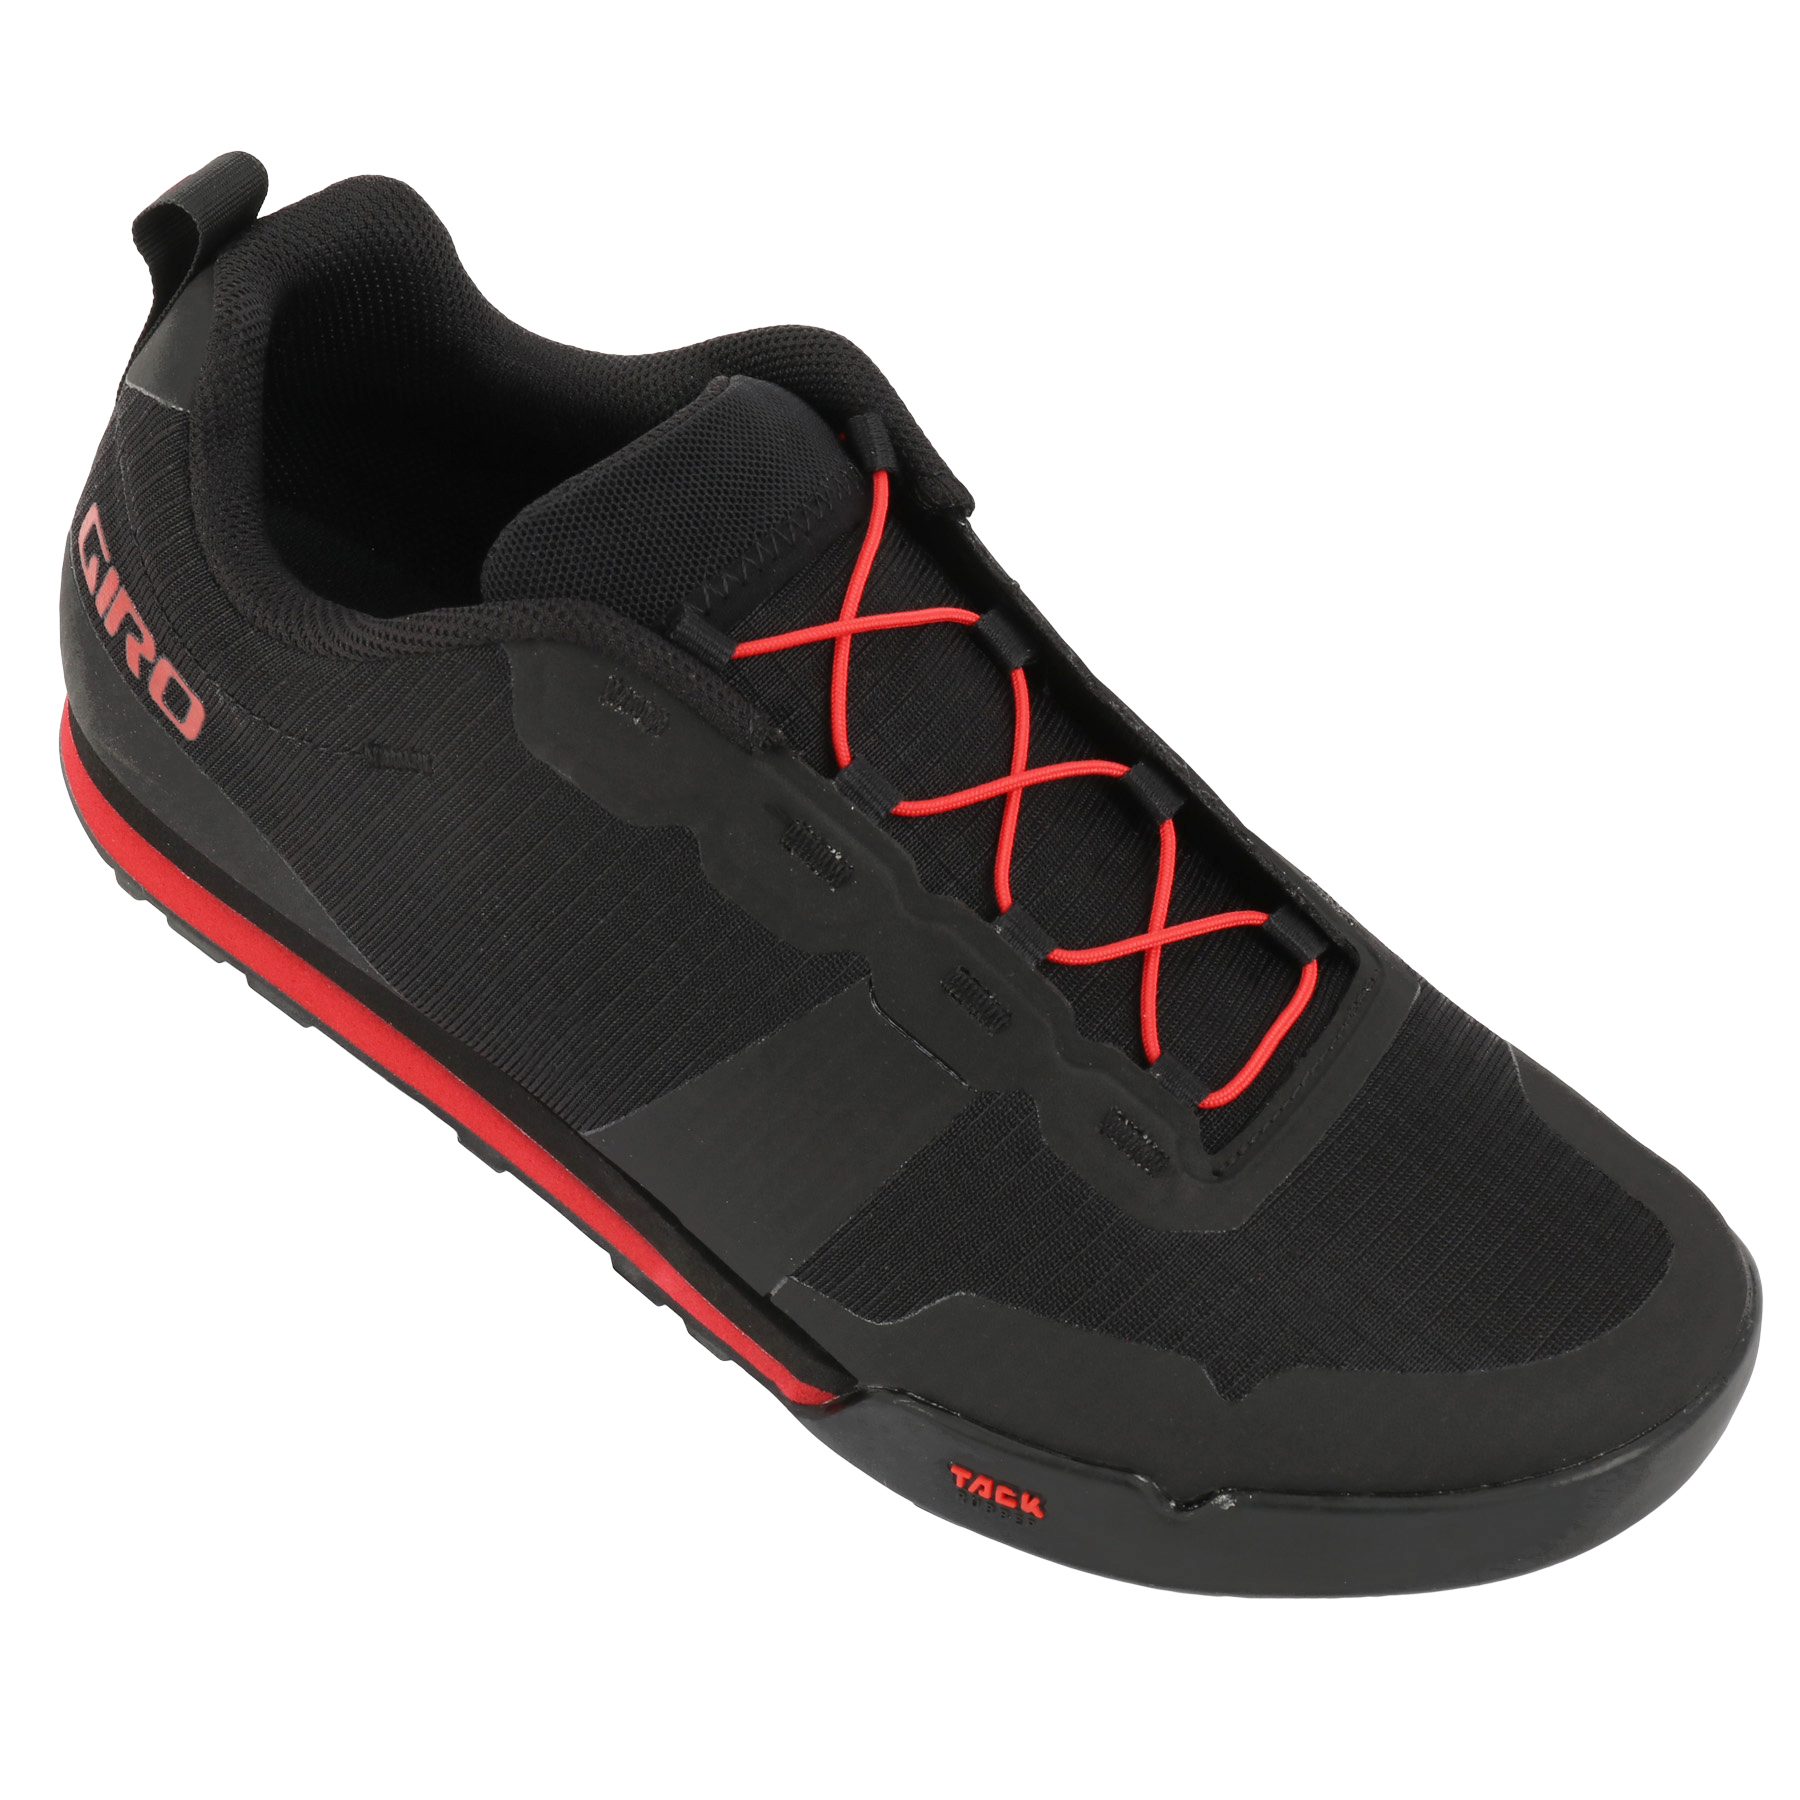 Productfoto van Giro Tracker Fastlace Flatpedal Schoenen Heren - black/bright red